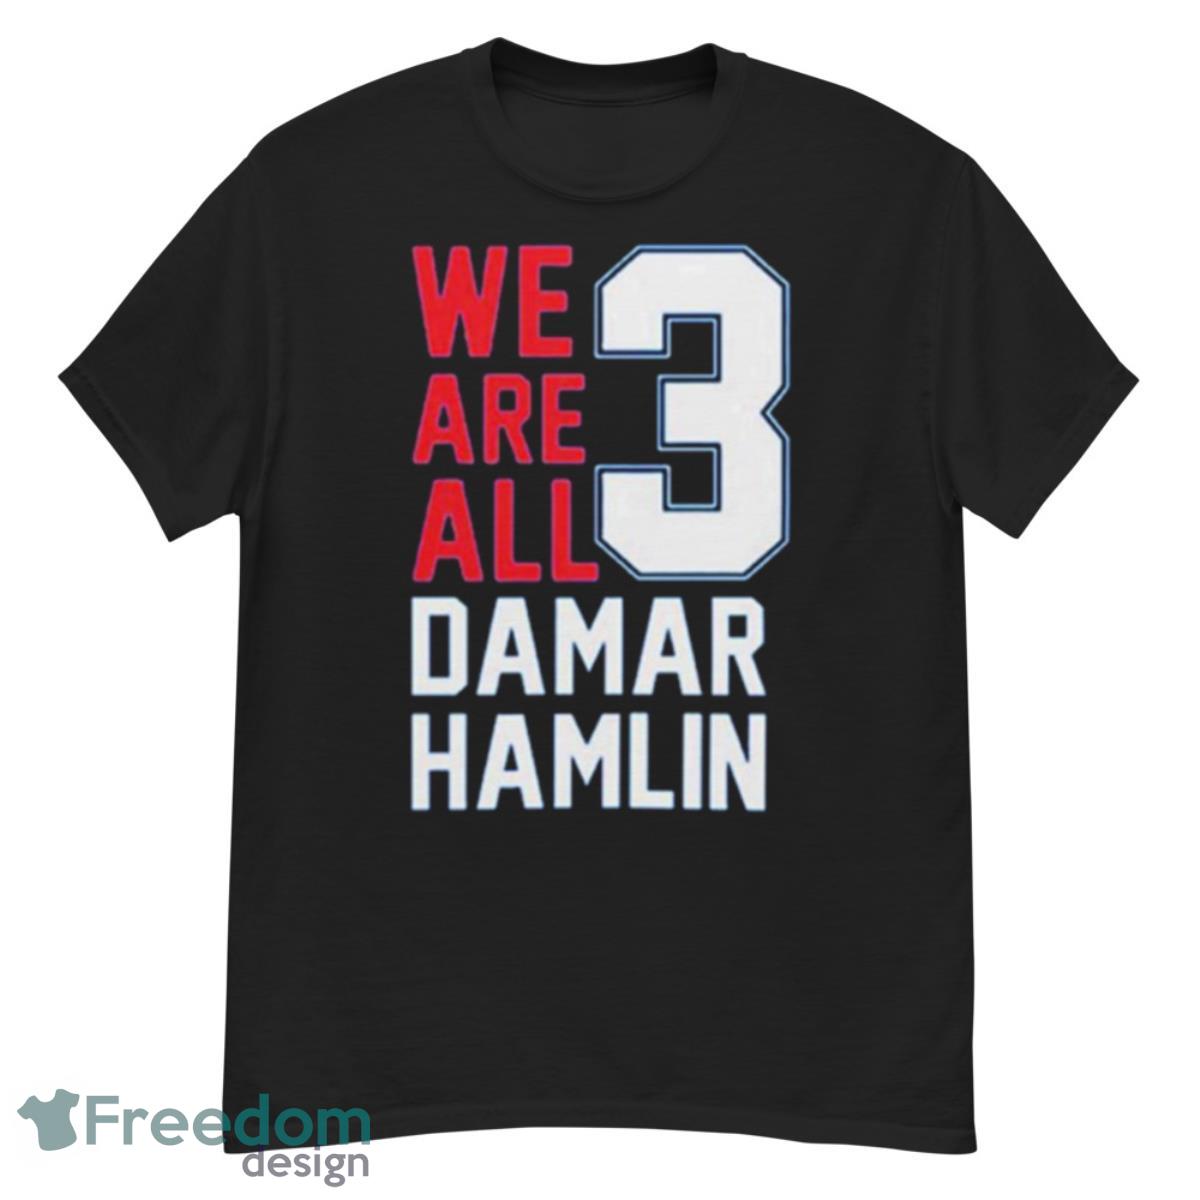 Damar Hamlin We Are All Damar Hamlin 3 Shirt - G500 Men’s Classic T-Shirt